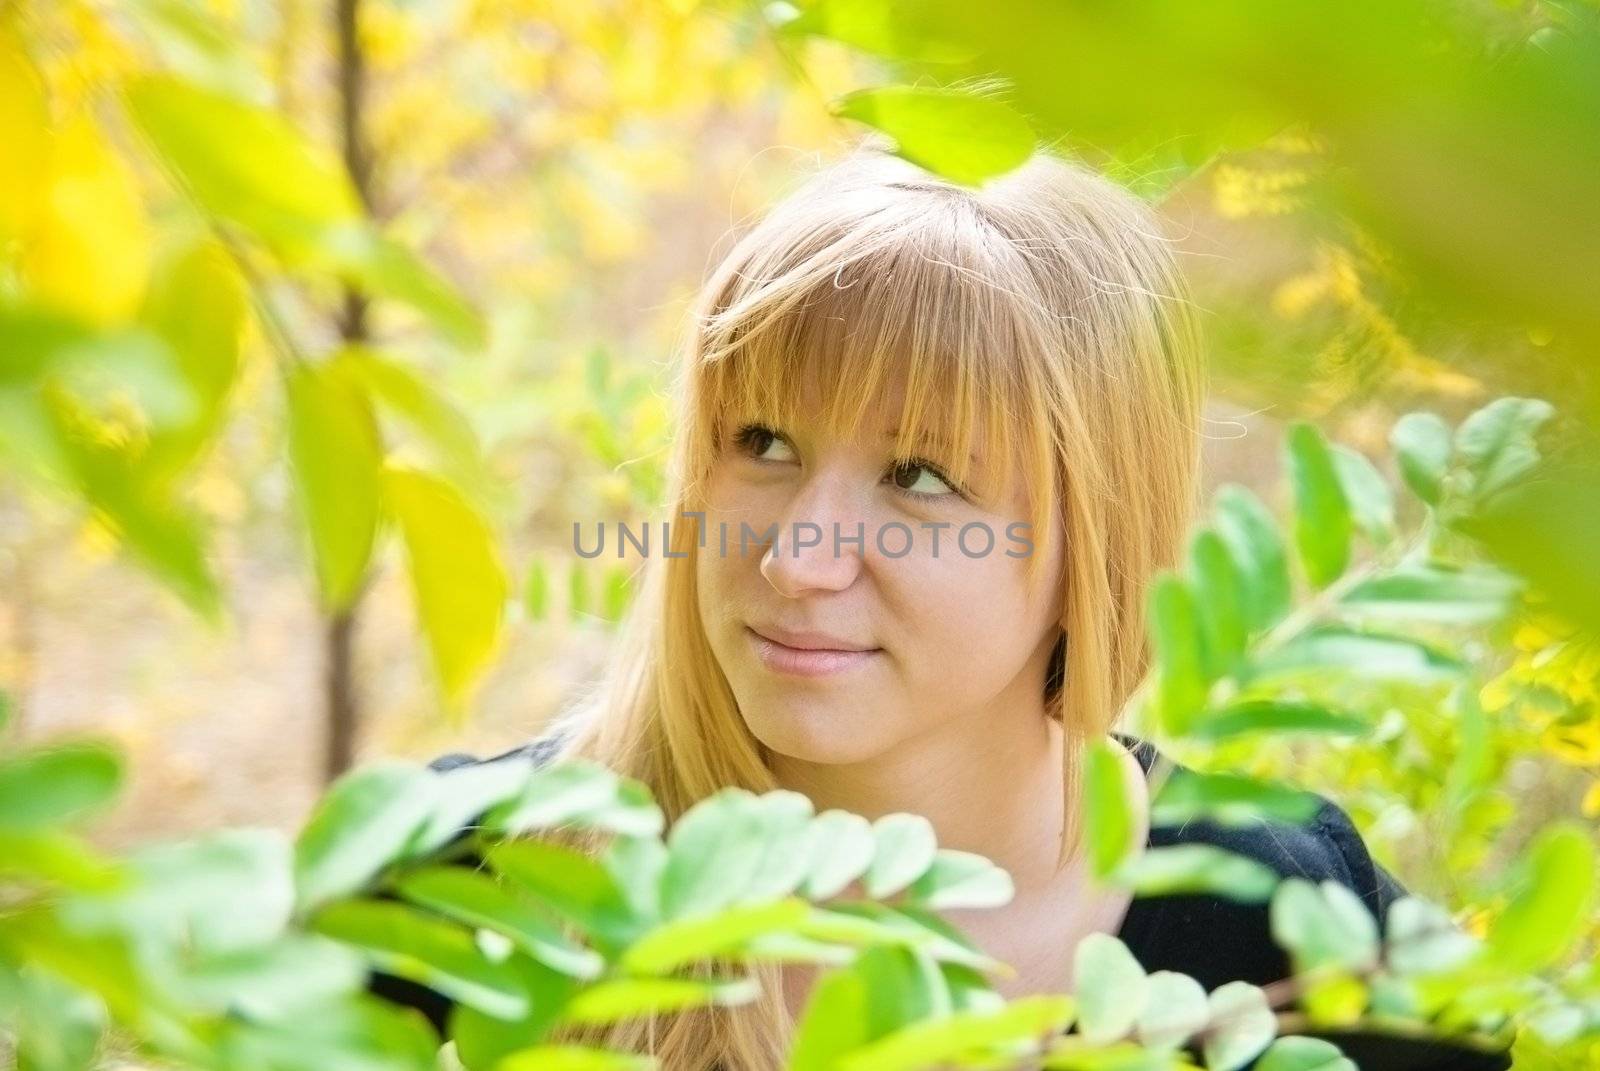 Teenage girl in fall foliage